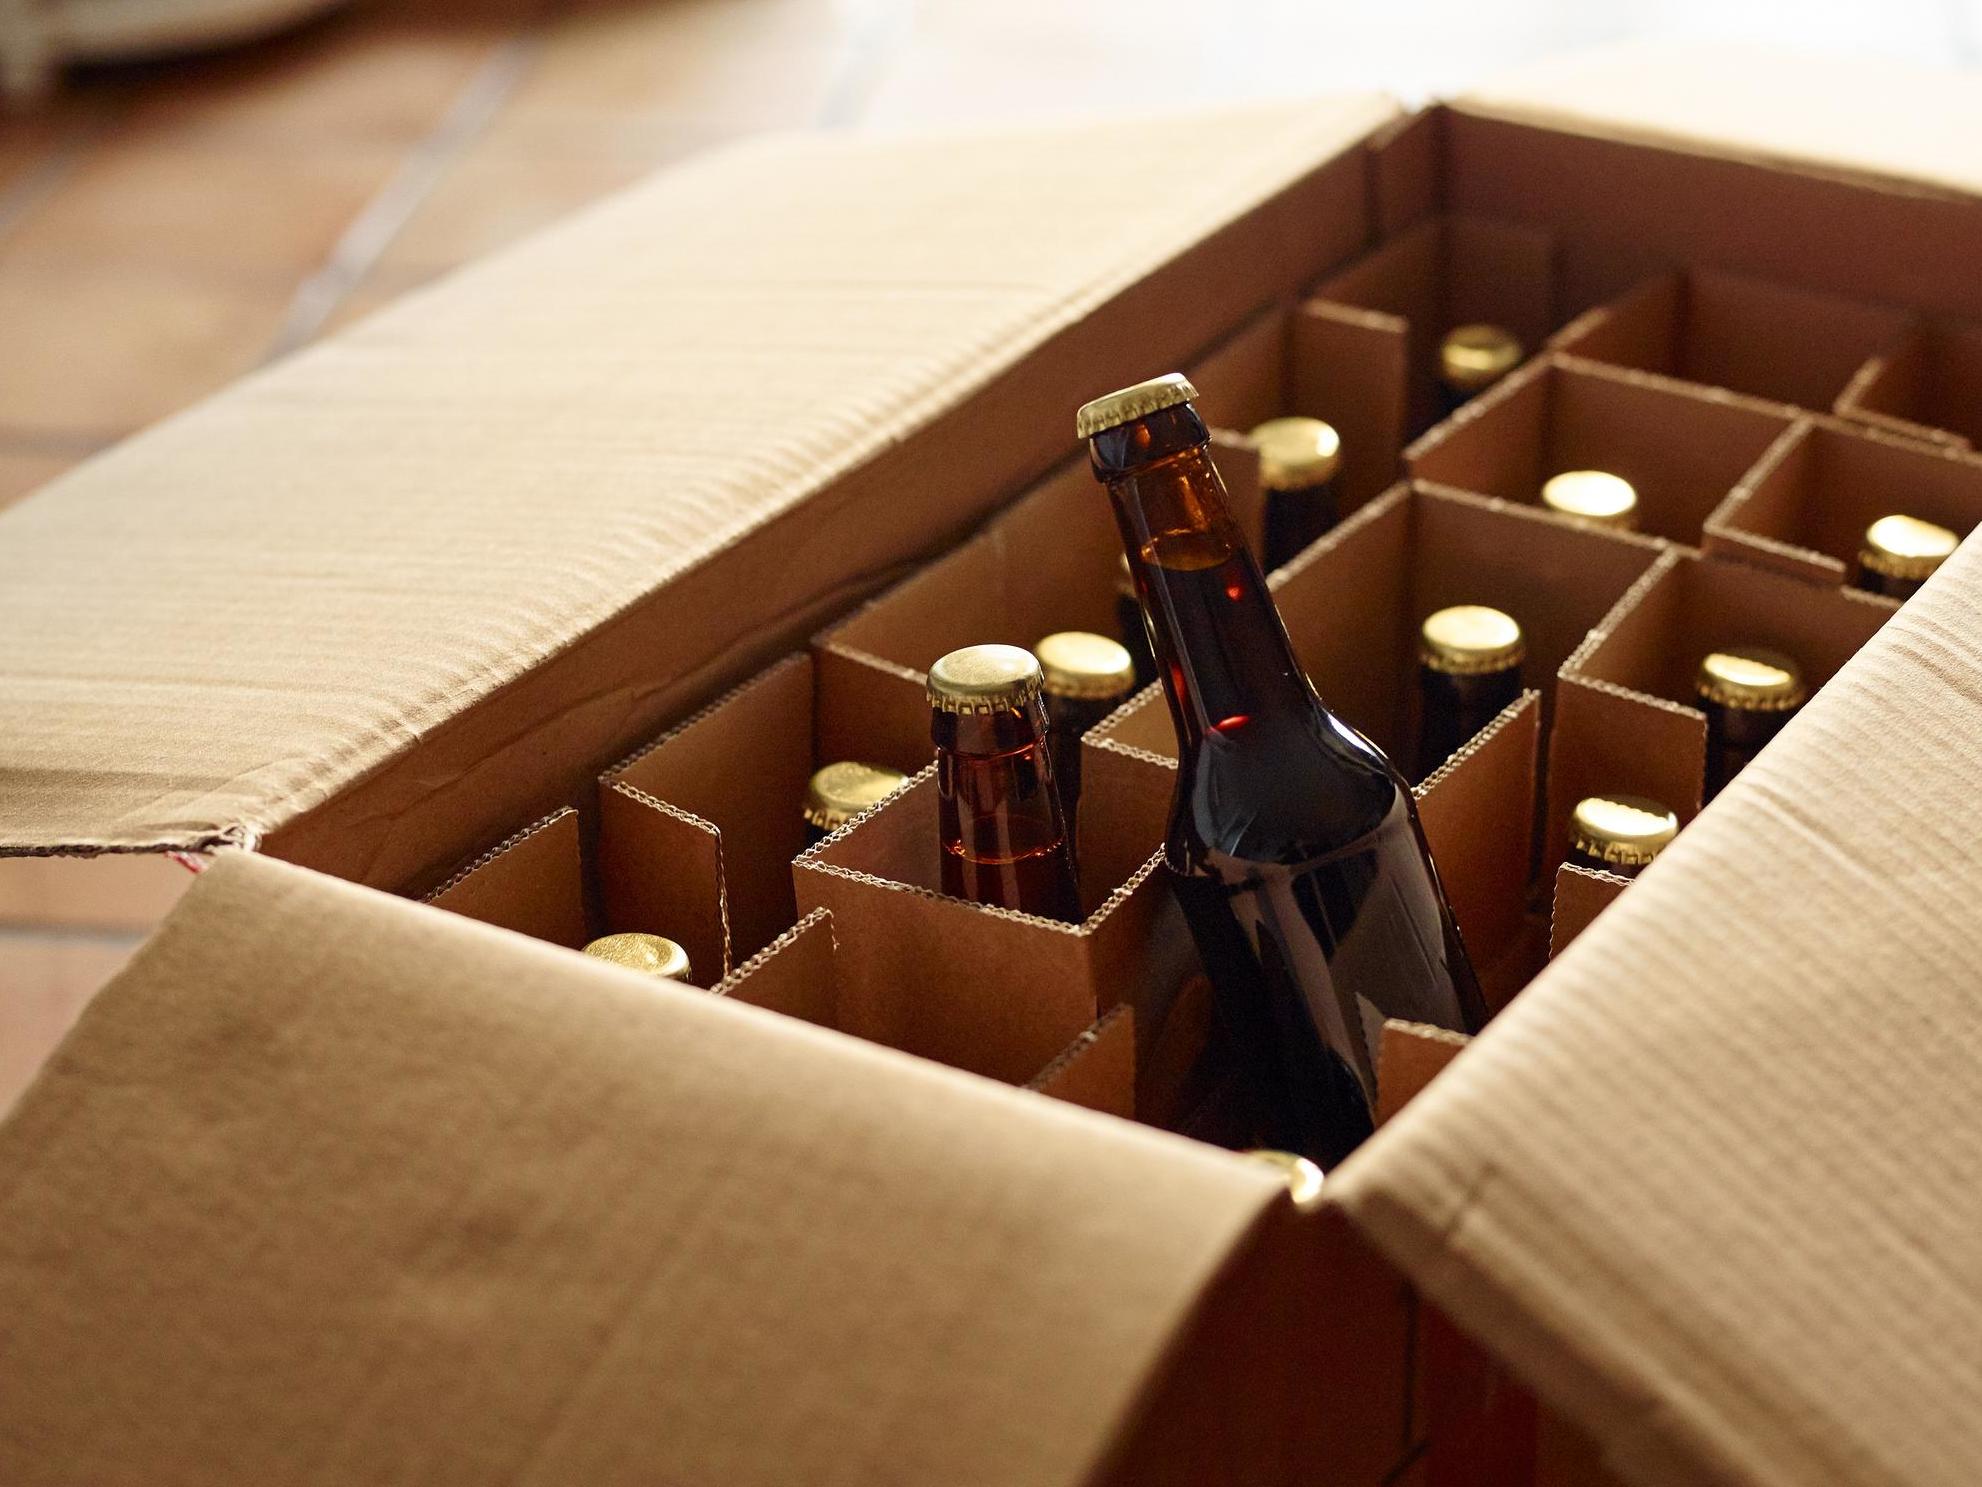 Large numbers of customers ordered beer online during lockdown